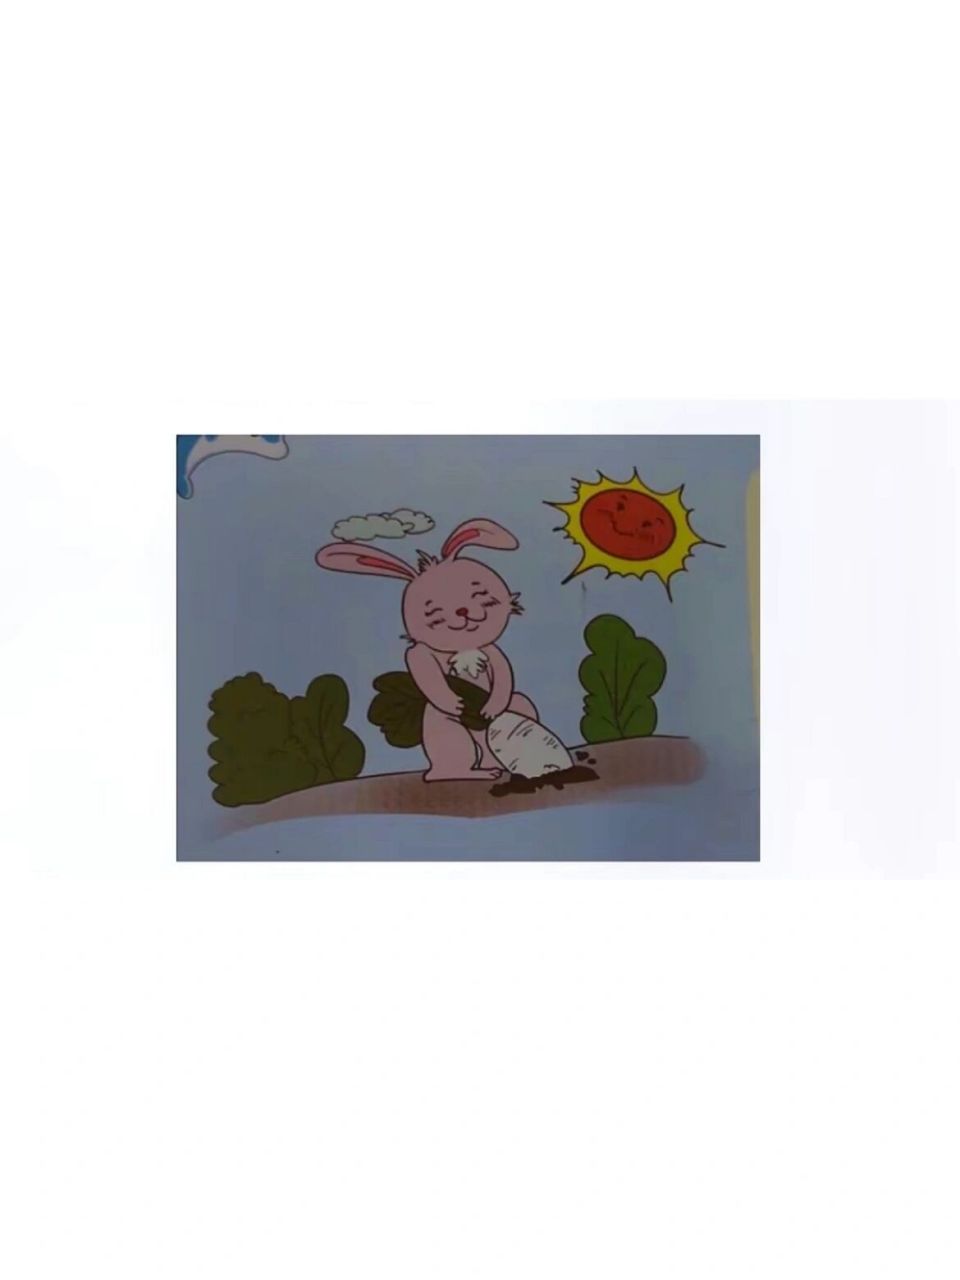 小兔子拔萝卜看图写话图片